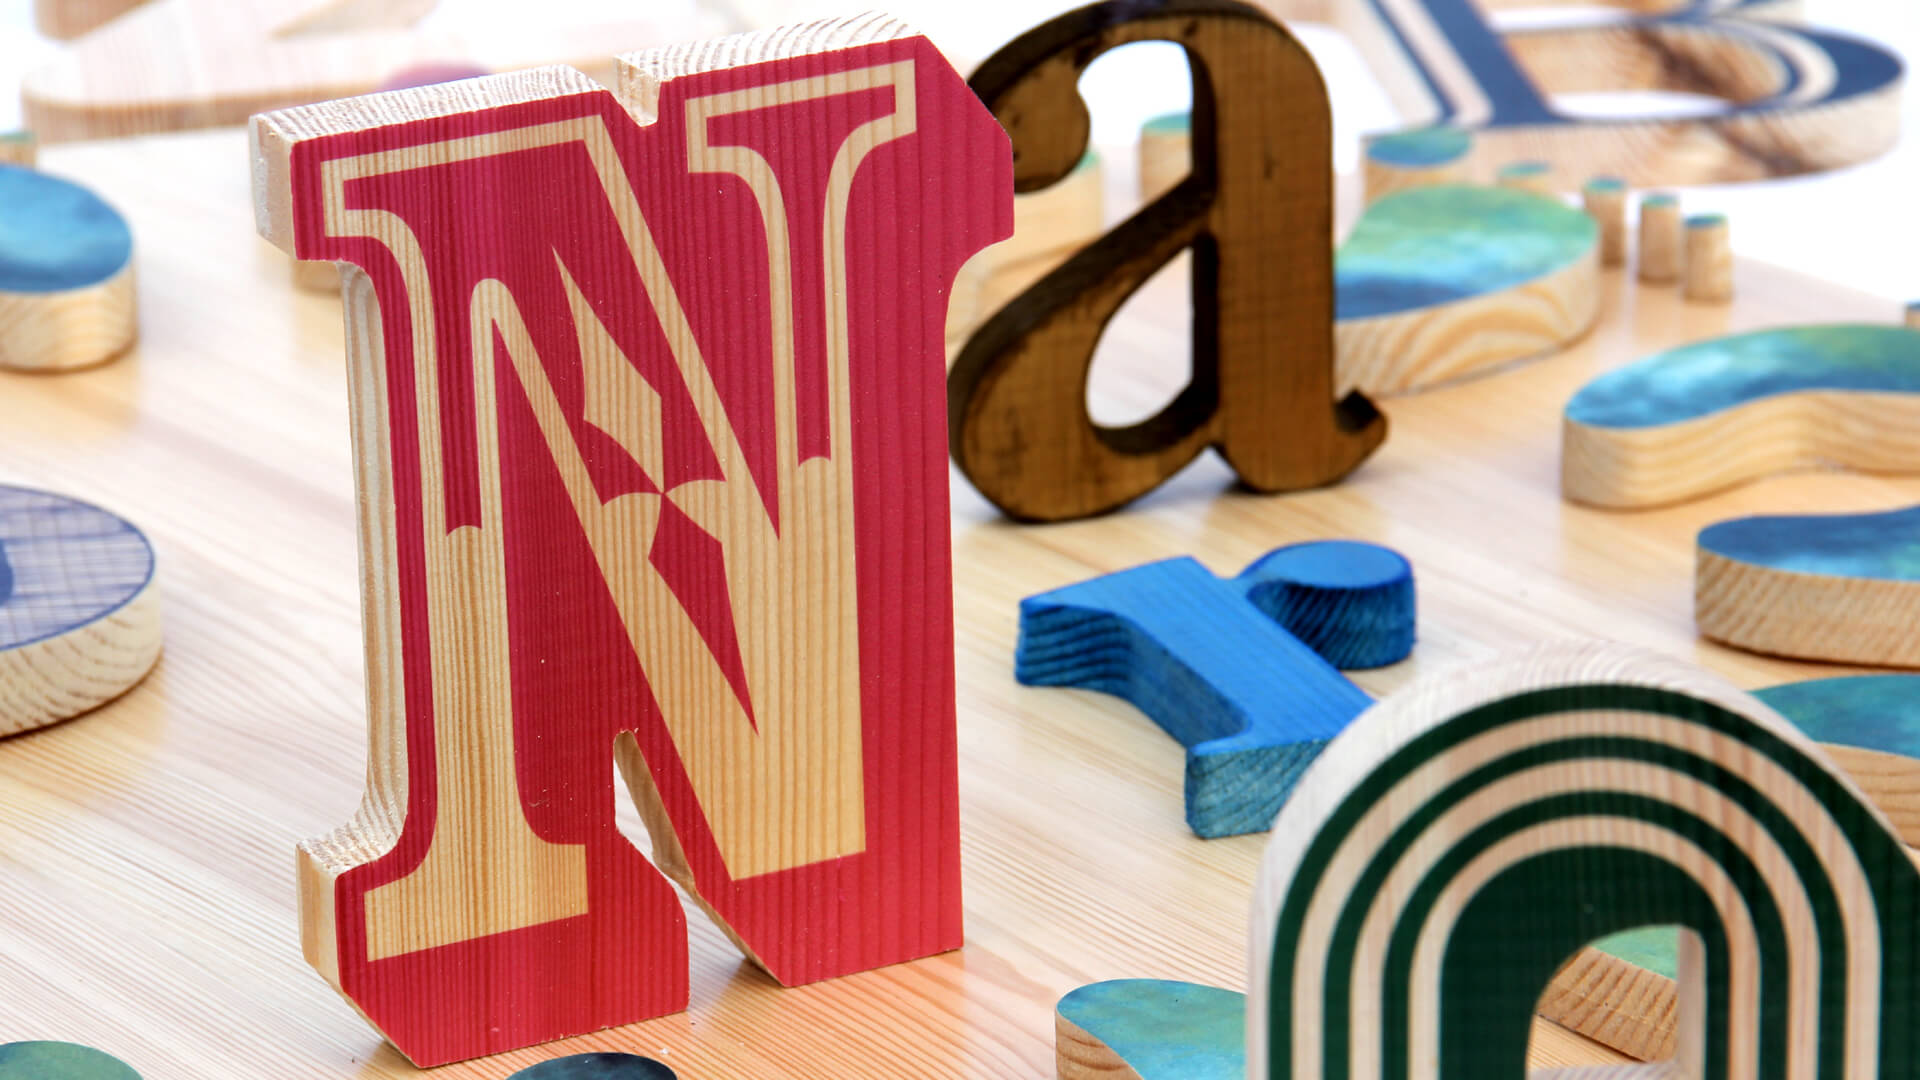 letras de madera - letras-de-madera-cartas-decorativas-cartas-de-madera-cartas-de-madera-contrachapado